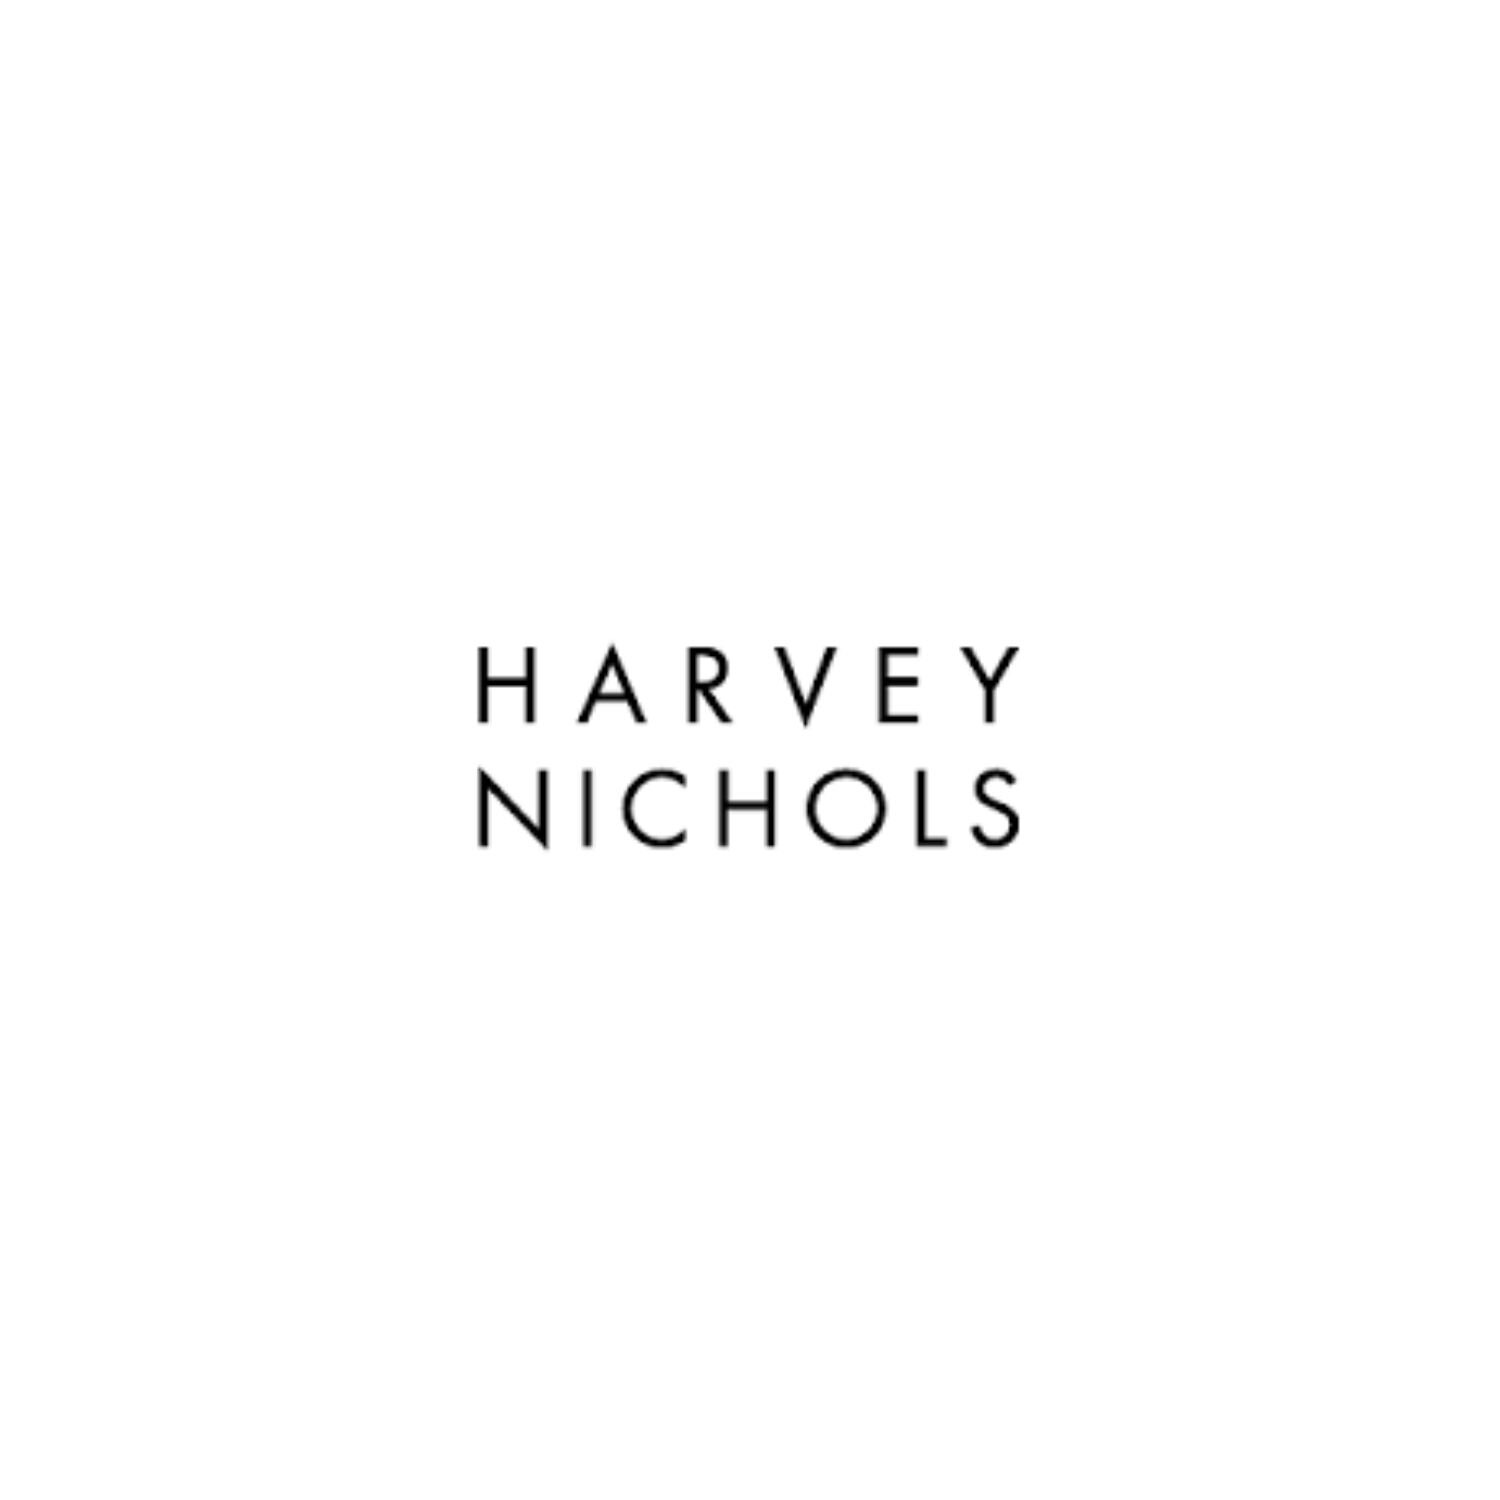 Harvey Nichols.jpg